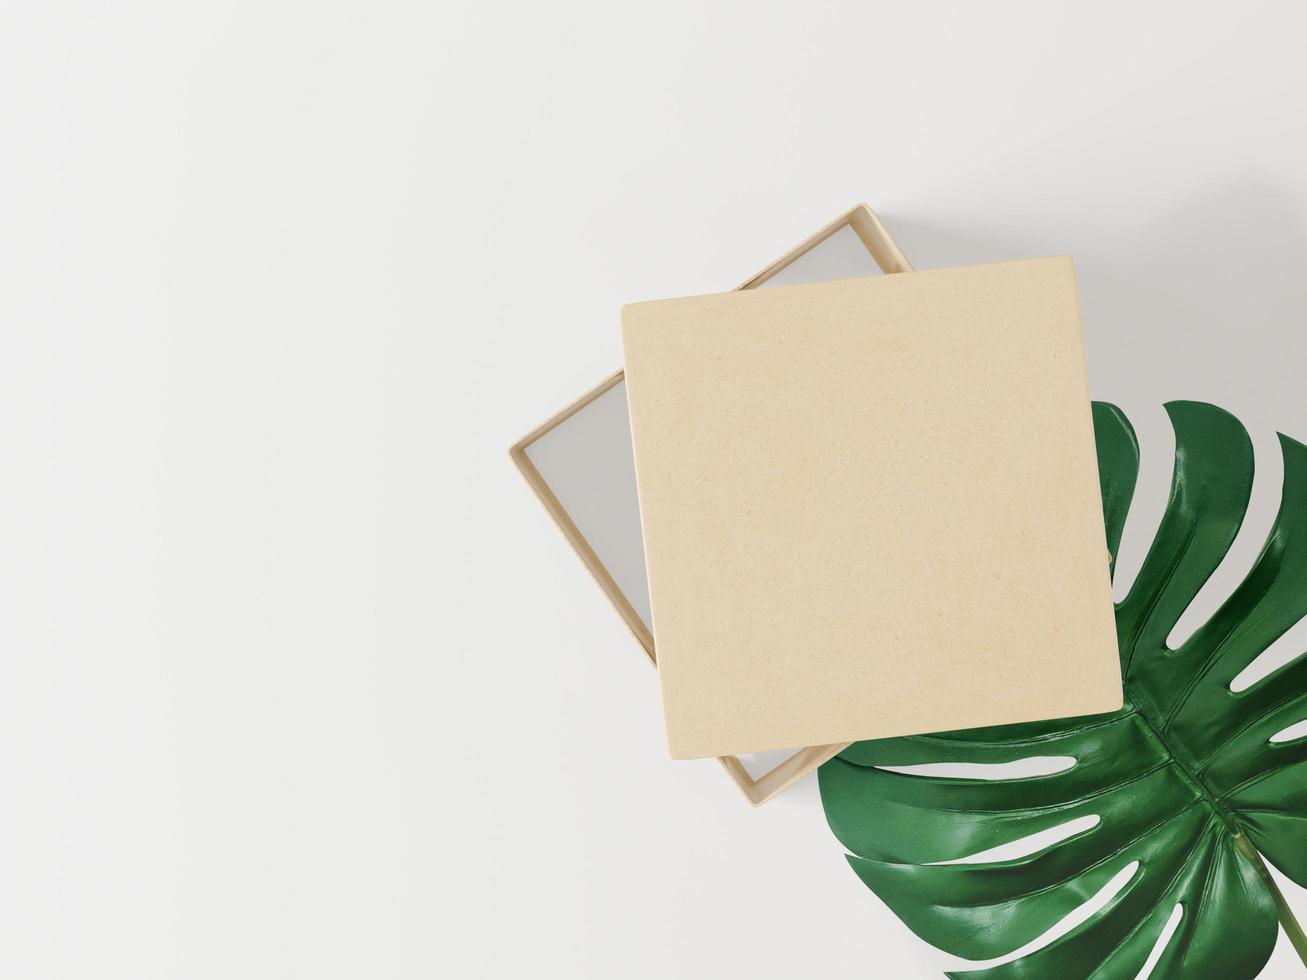 una scatola di carta per appunti su foglie su sfondo bianco foto